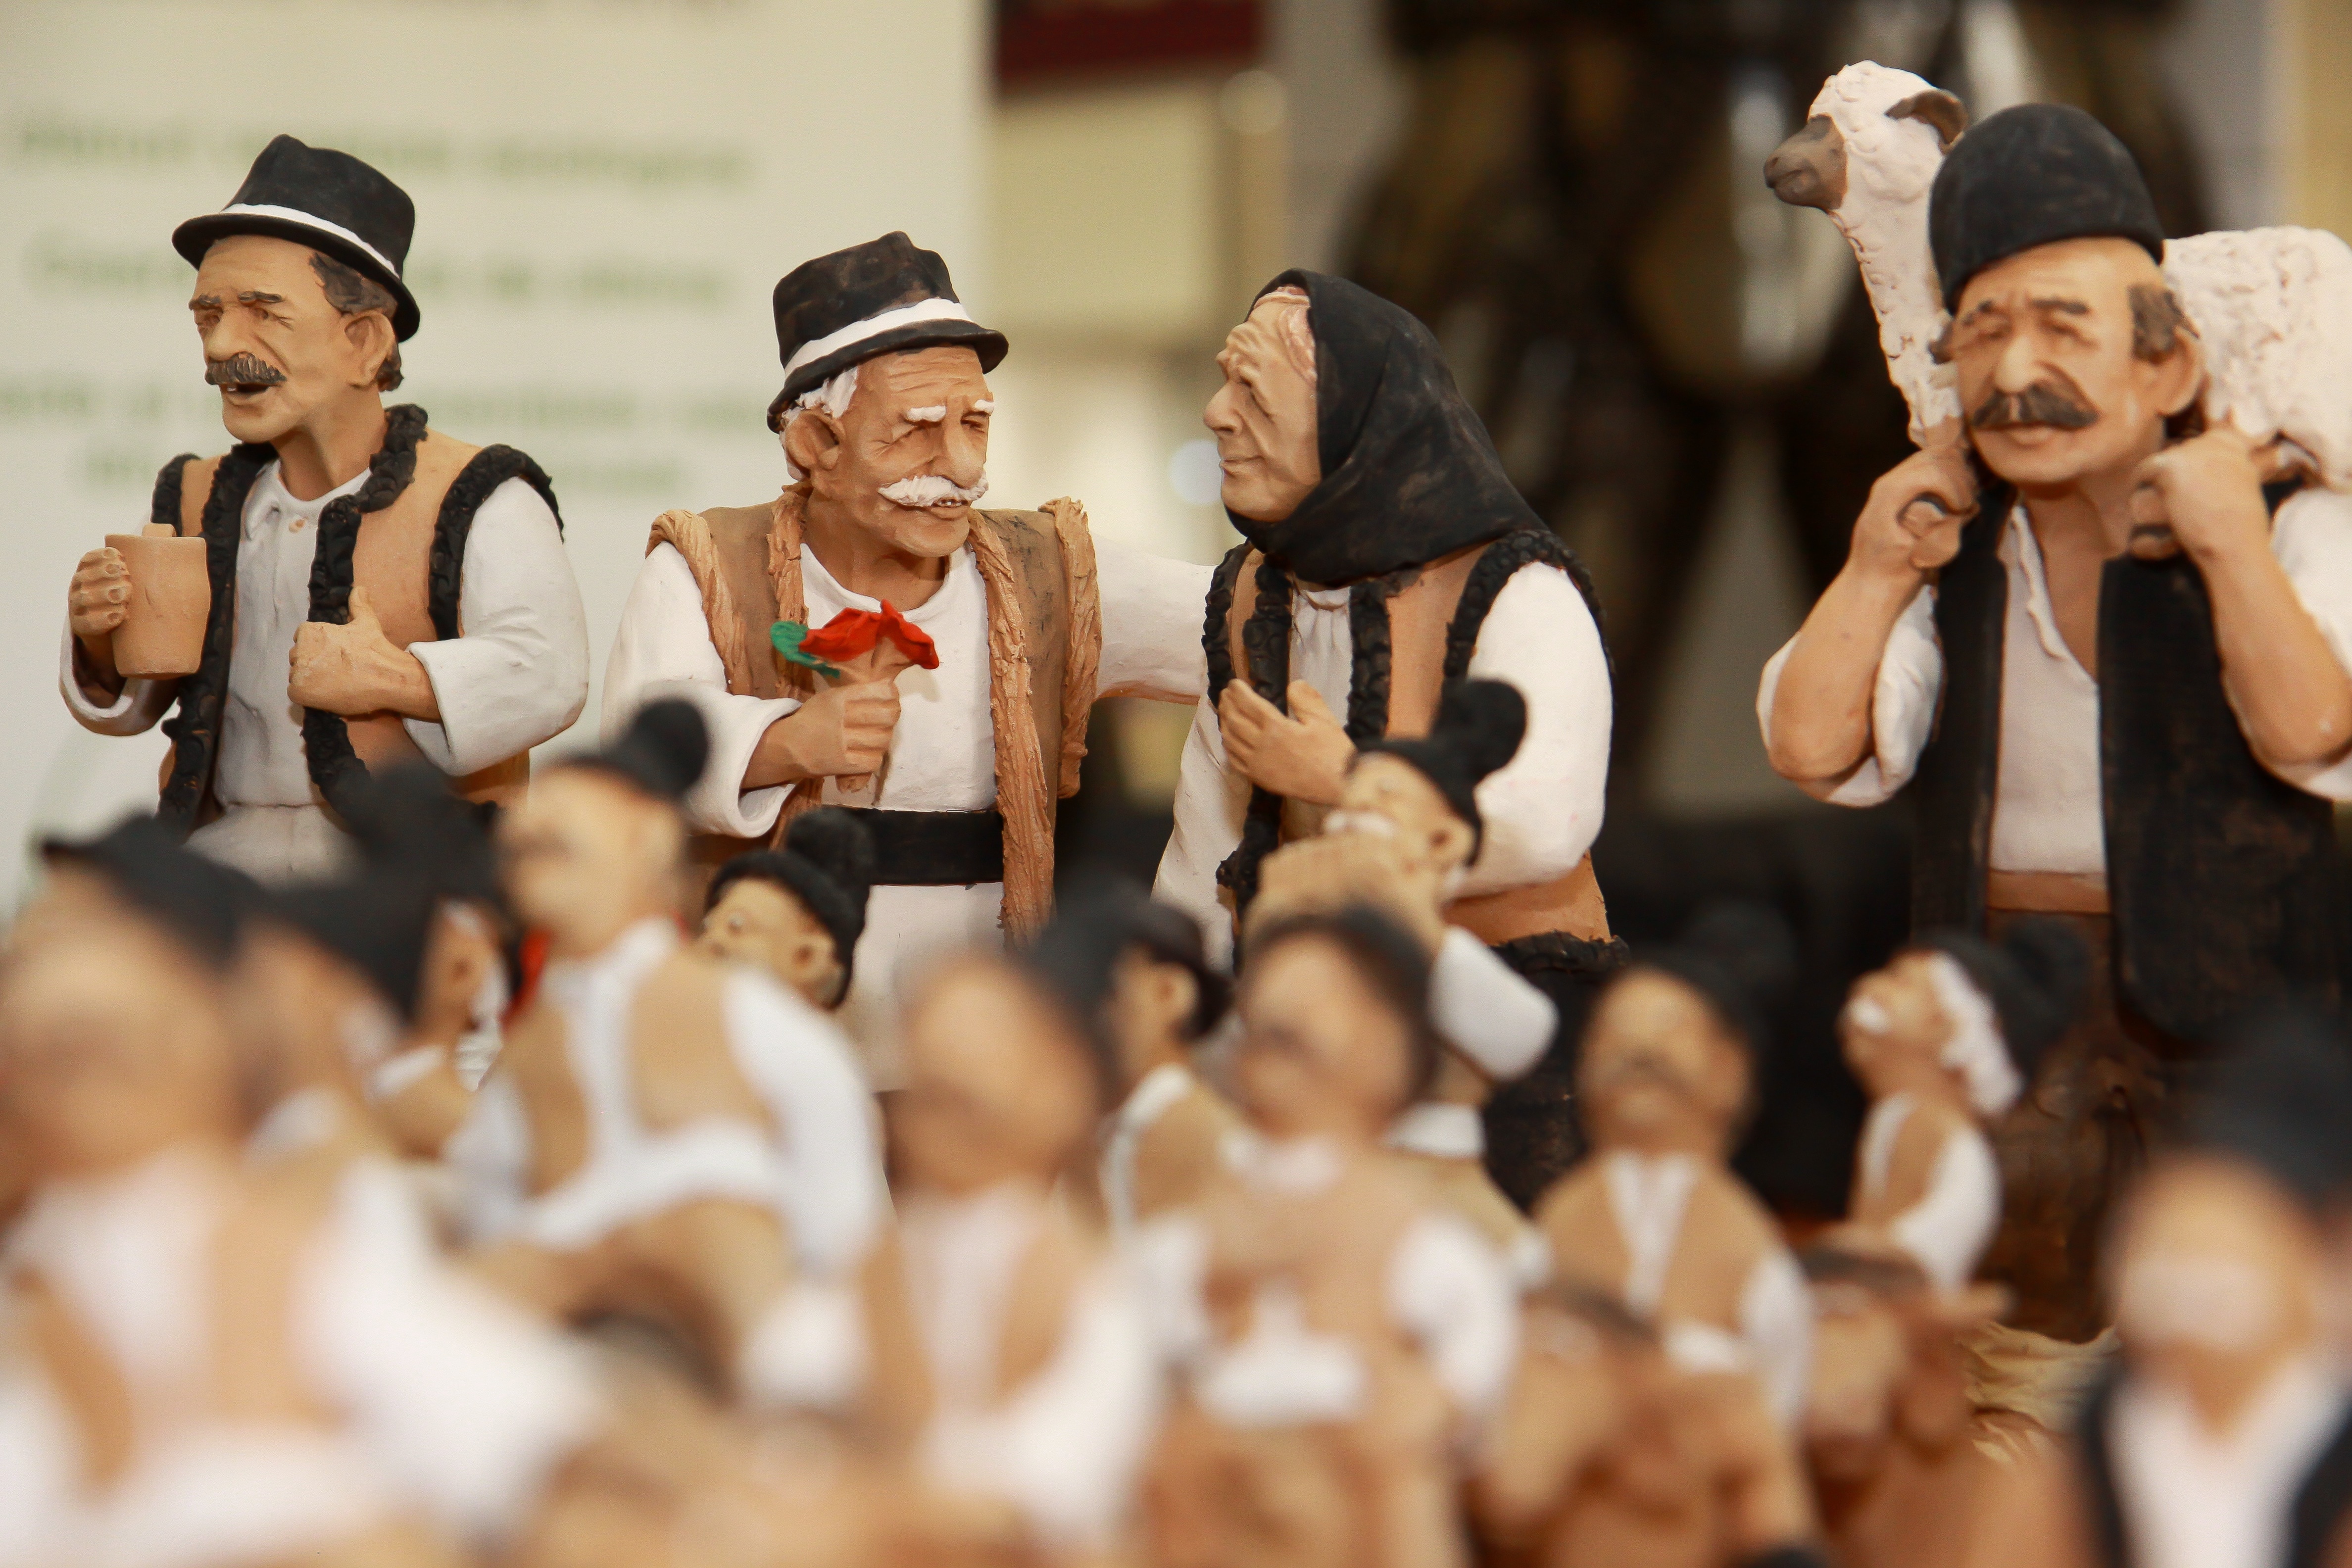 group of men ceramic figurines